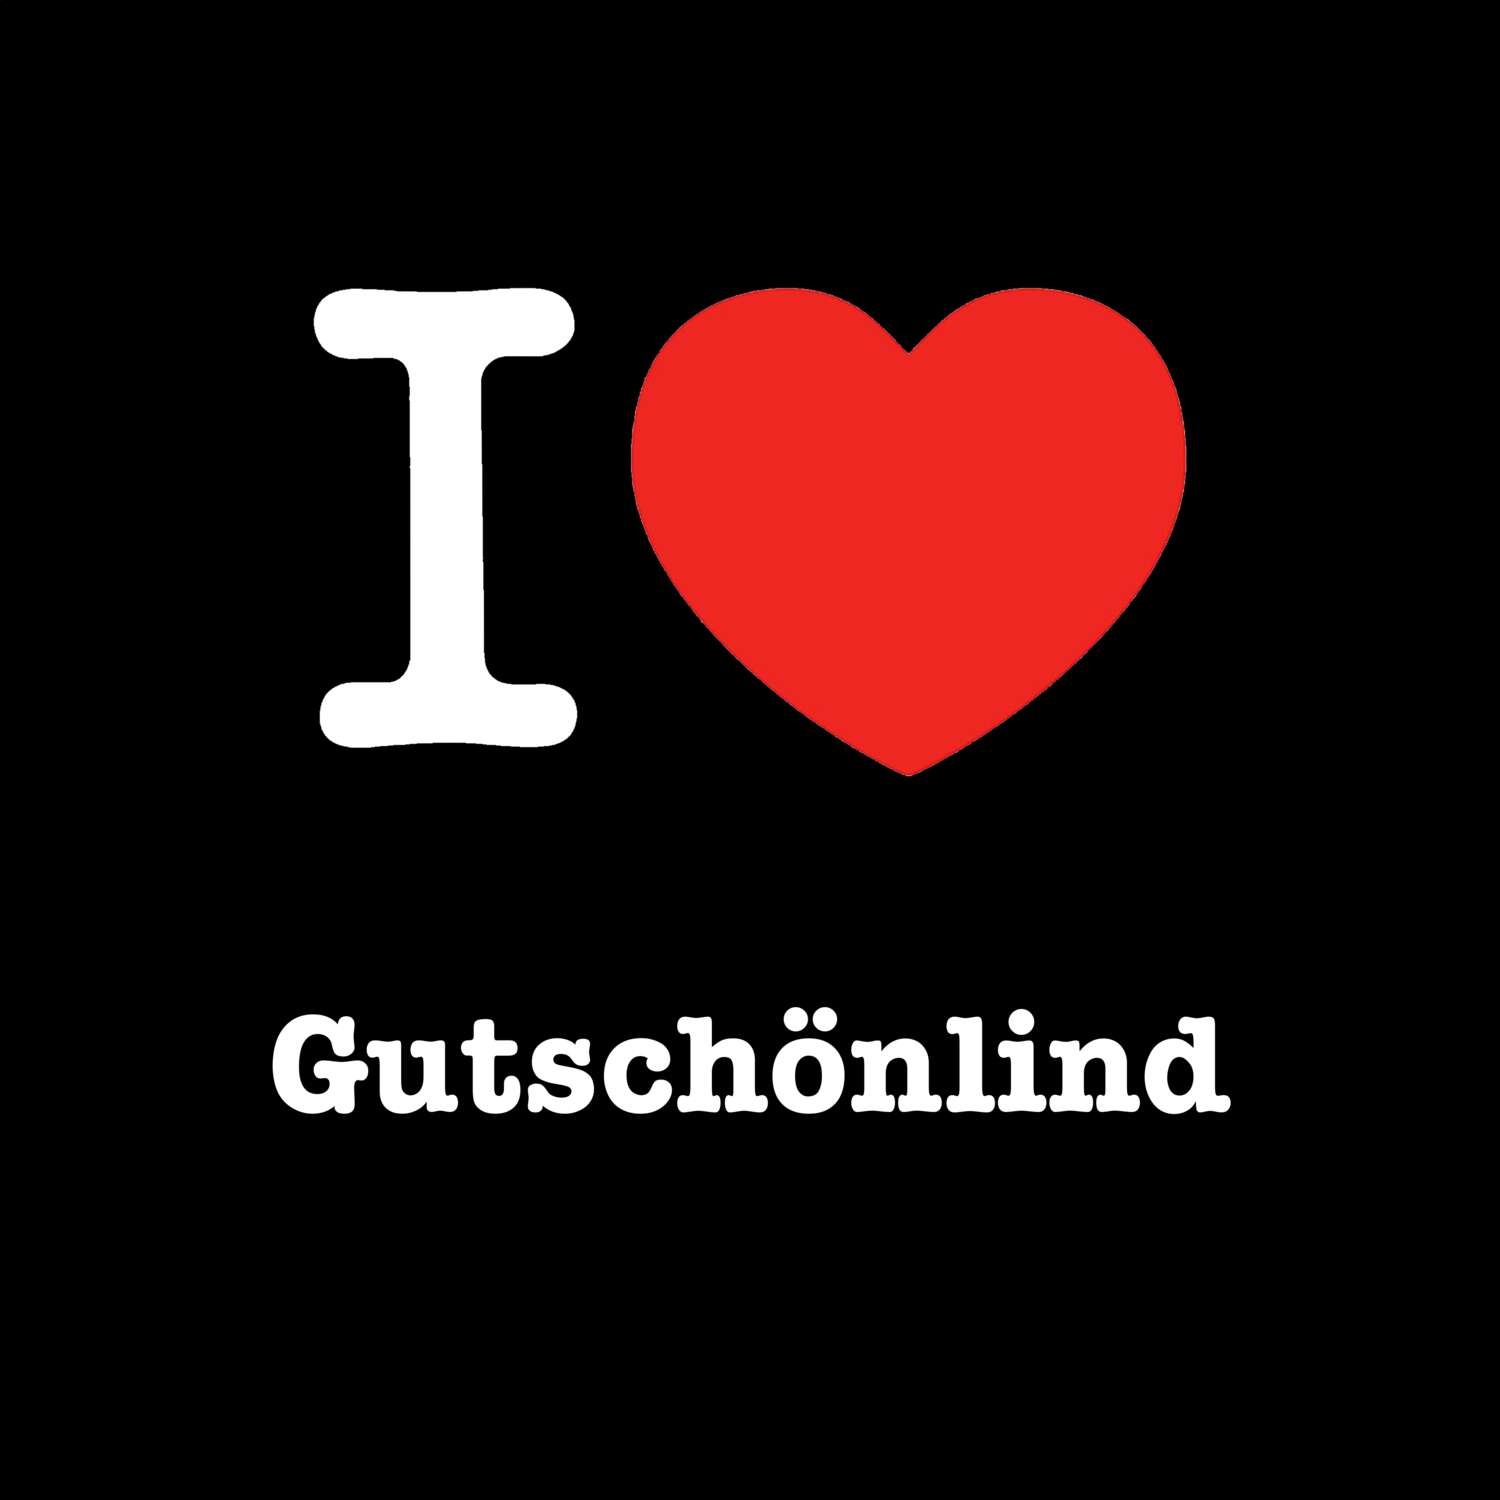 Gutschönlind T-Shirt »I love«